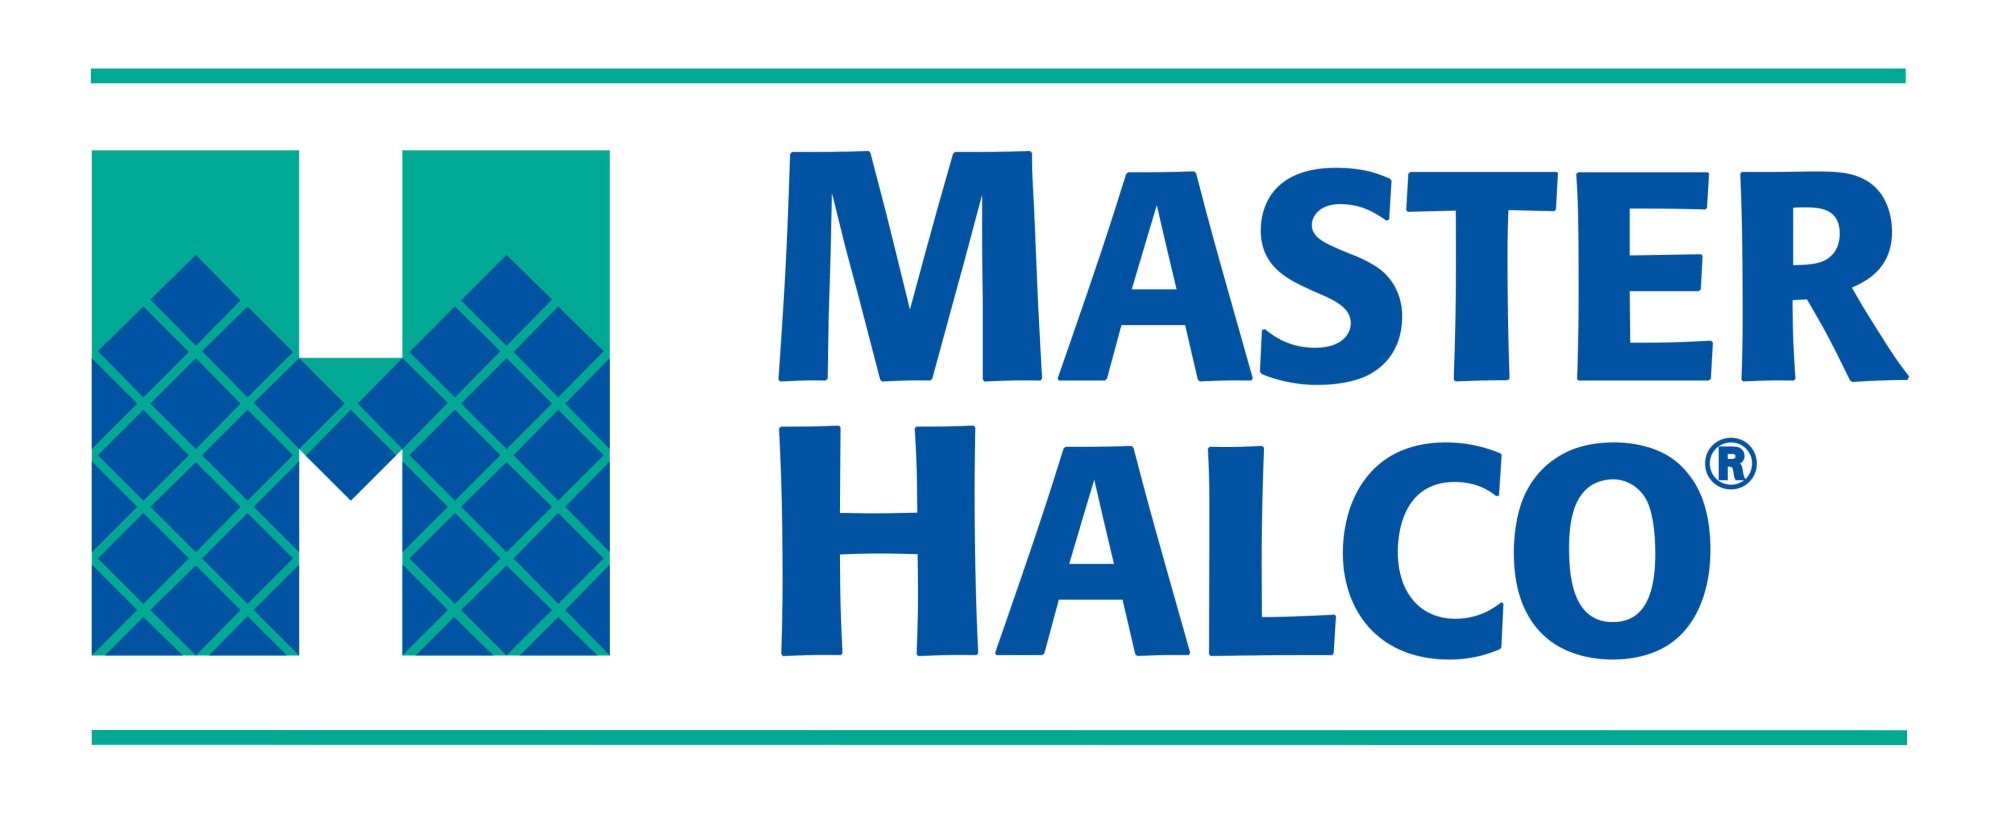 Master Haclo